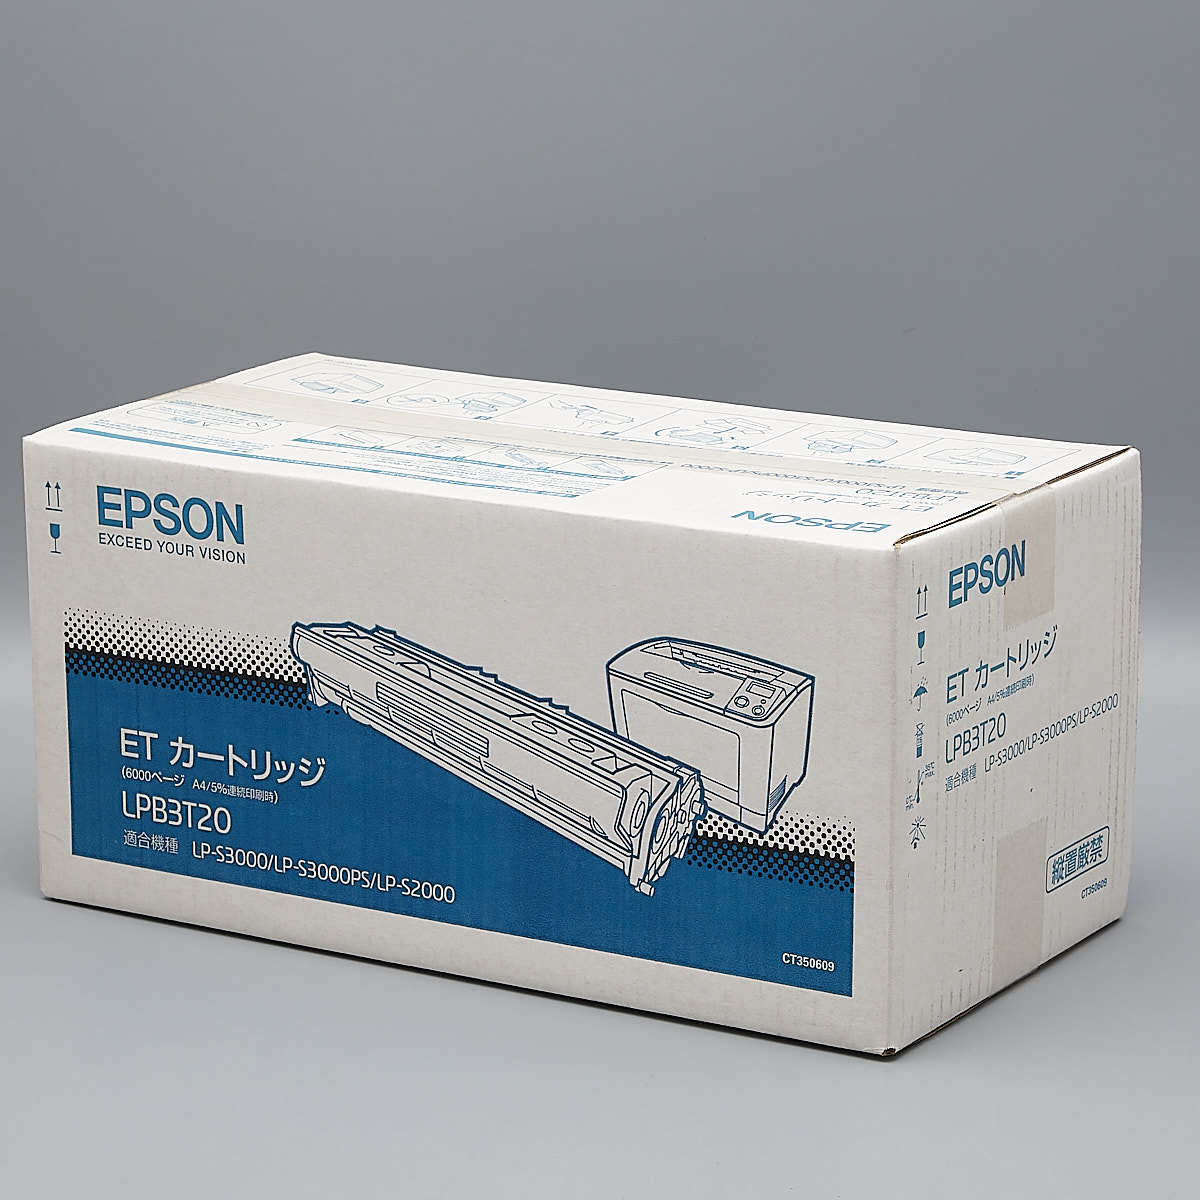 送料無料!! EPSON LPB3T20 ETカートリッジ 純正 適合機種 LP-S3000/LP-S3000PS/LP-S2000 印字枚数 6000 枚_画像2